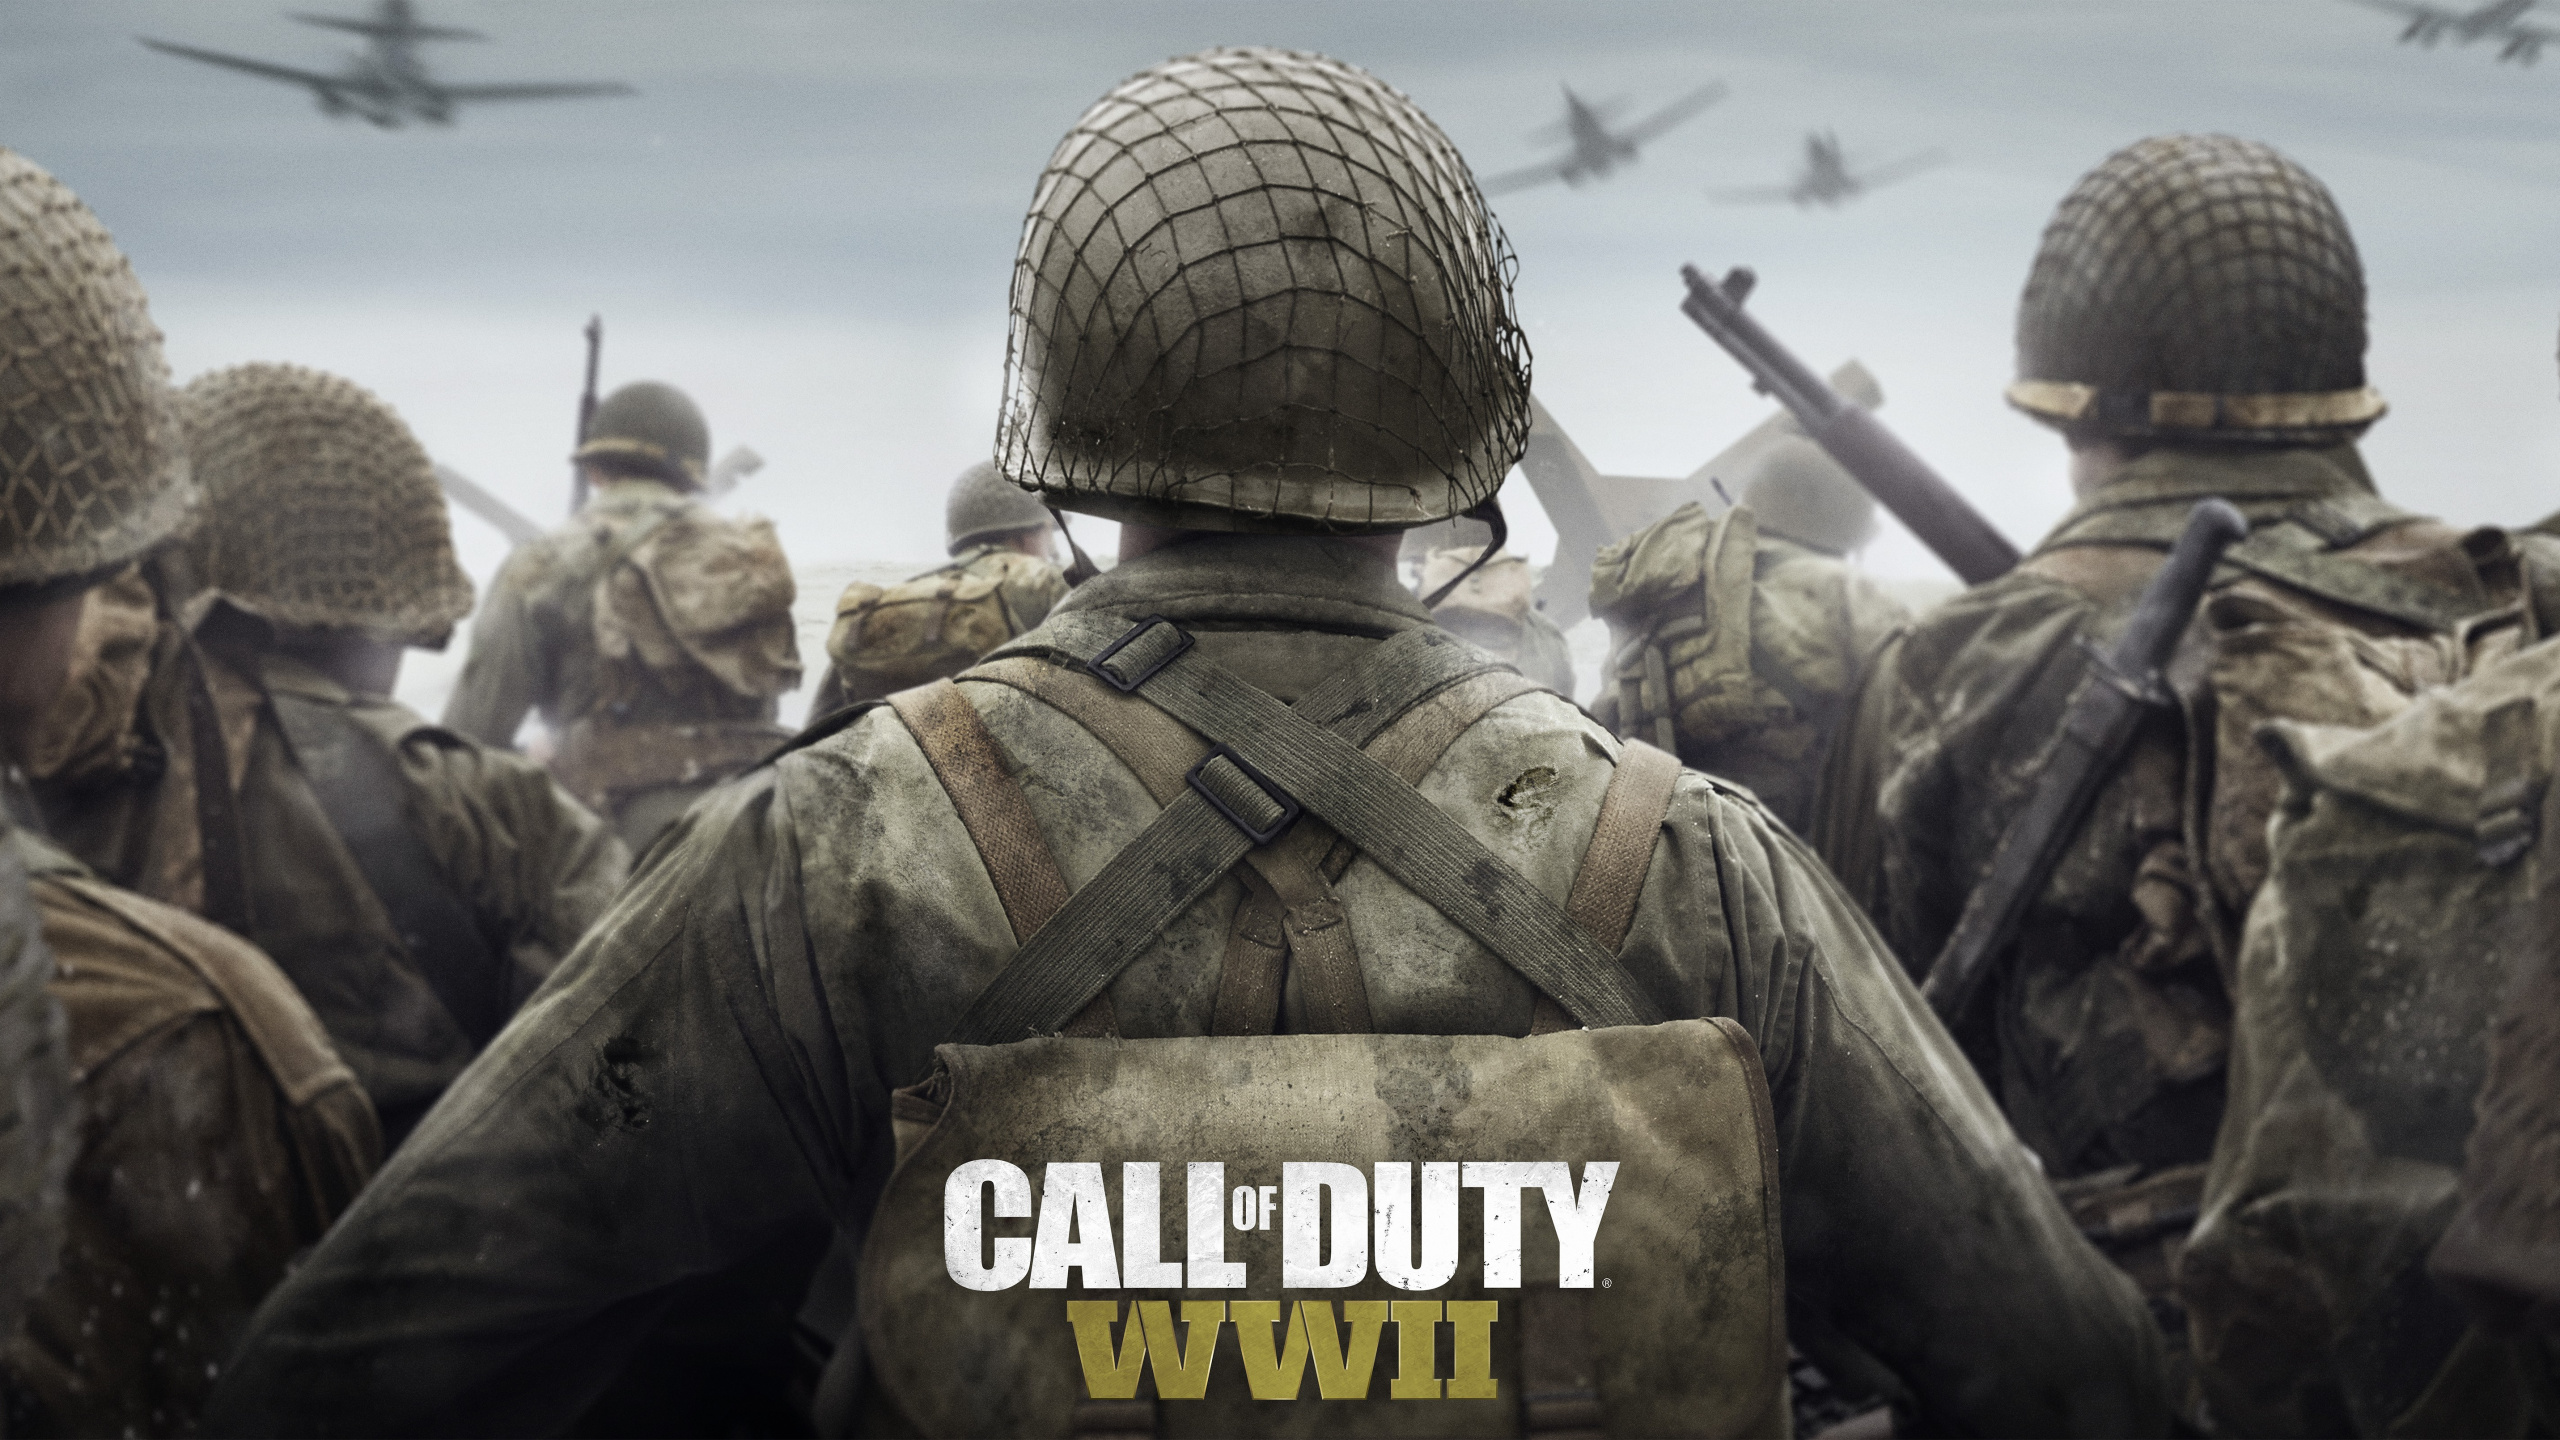 Обои служебный долг 2мв, Call of Duty WWII, activision, sledgehammer игры, солдат в разрешении 2560x1440